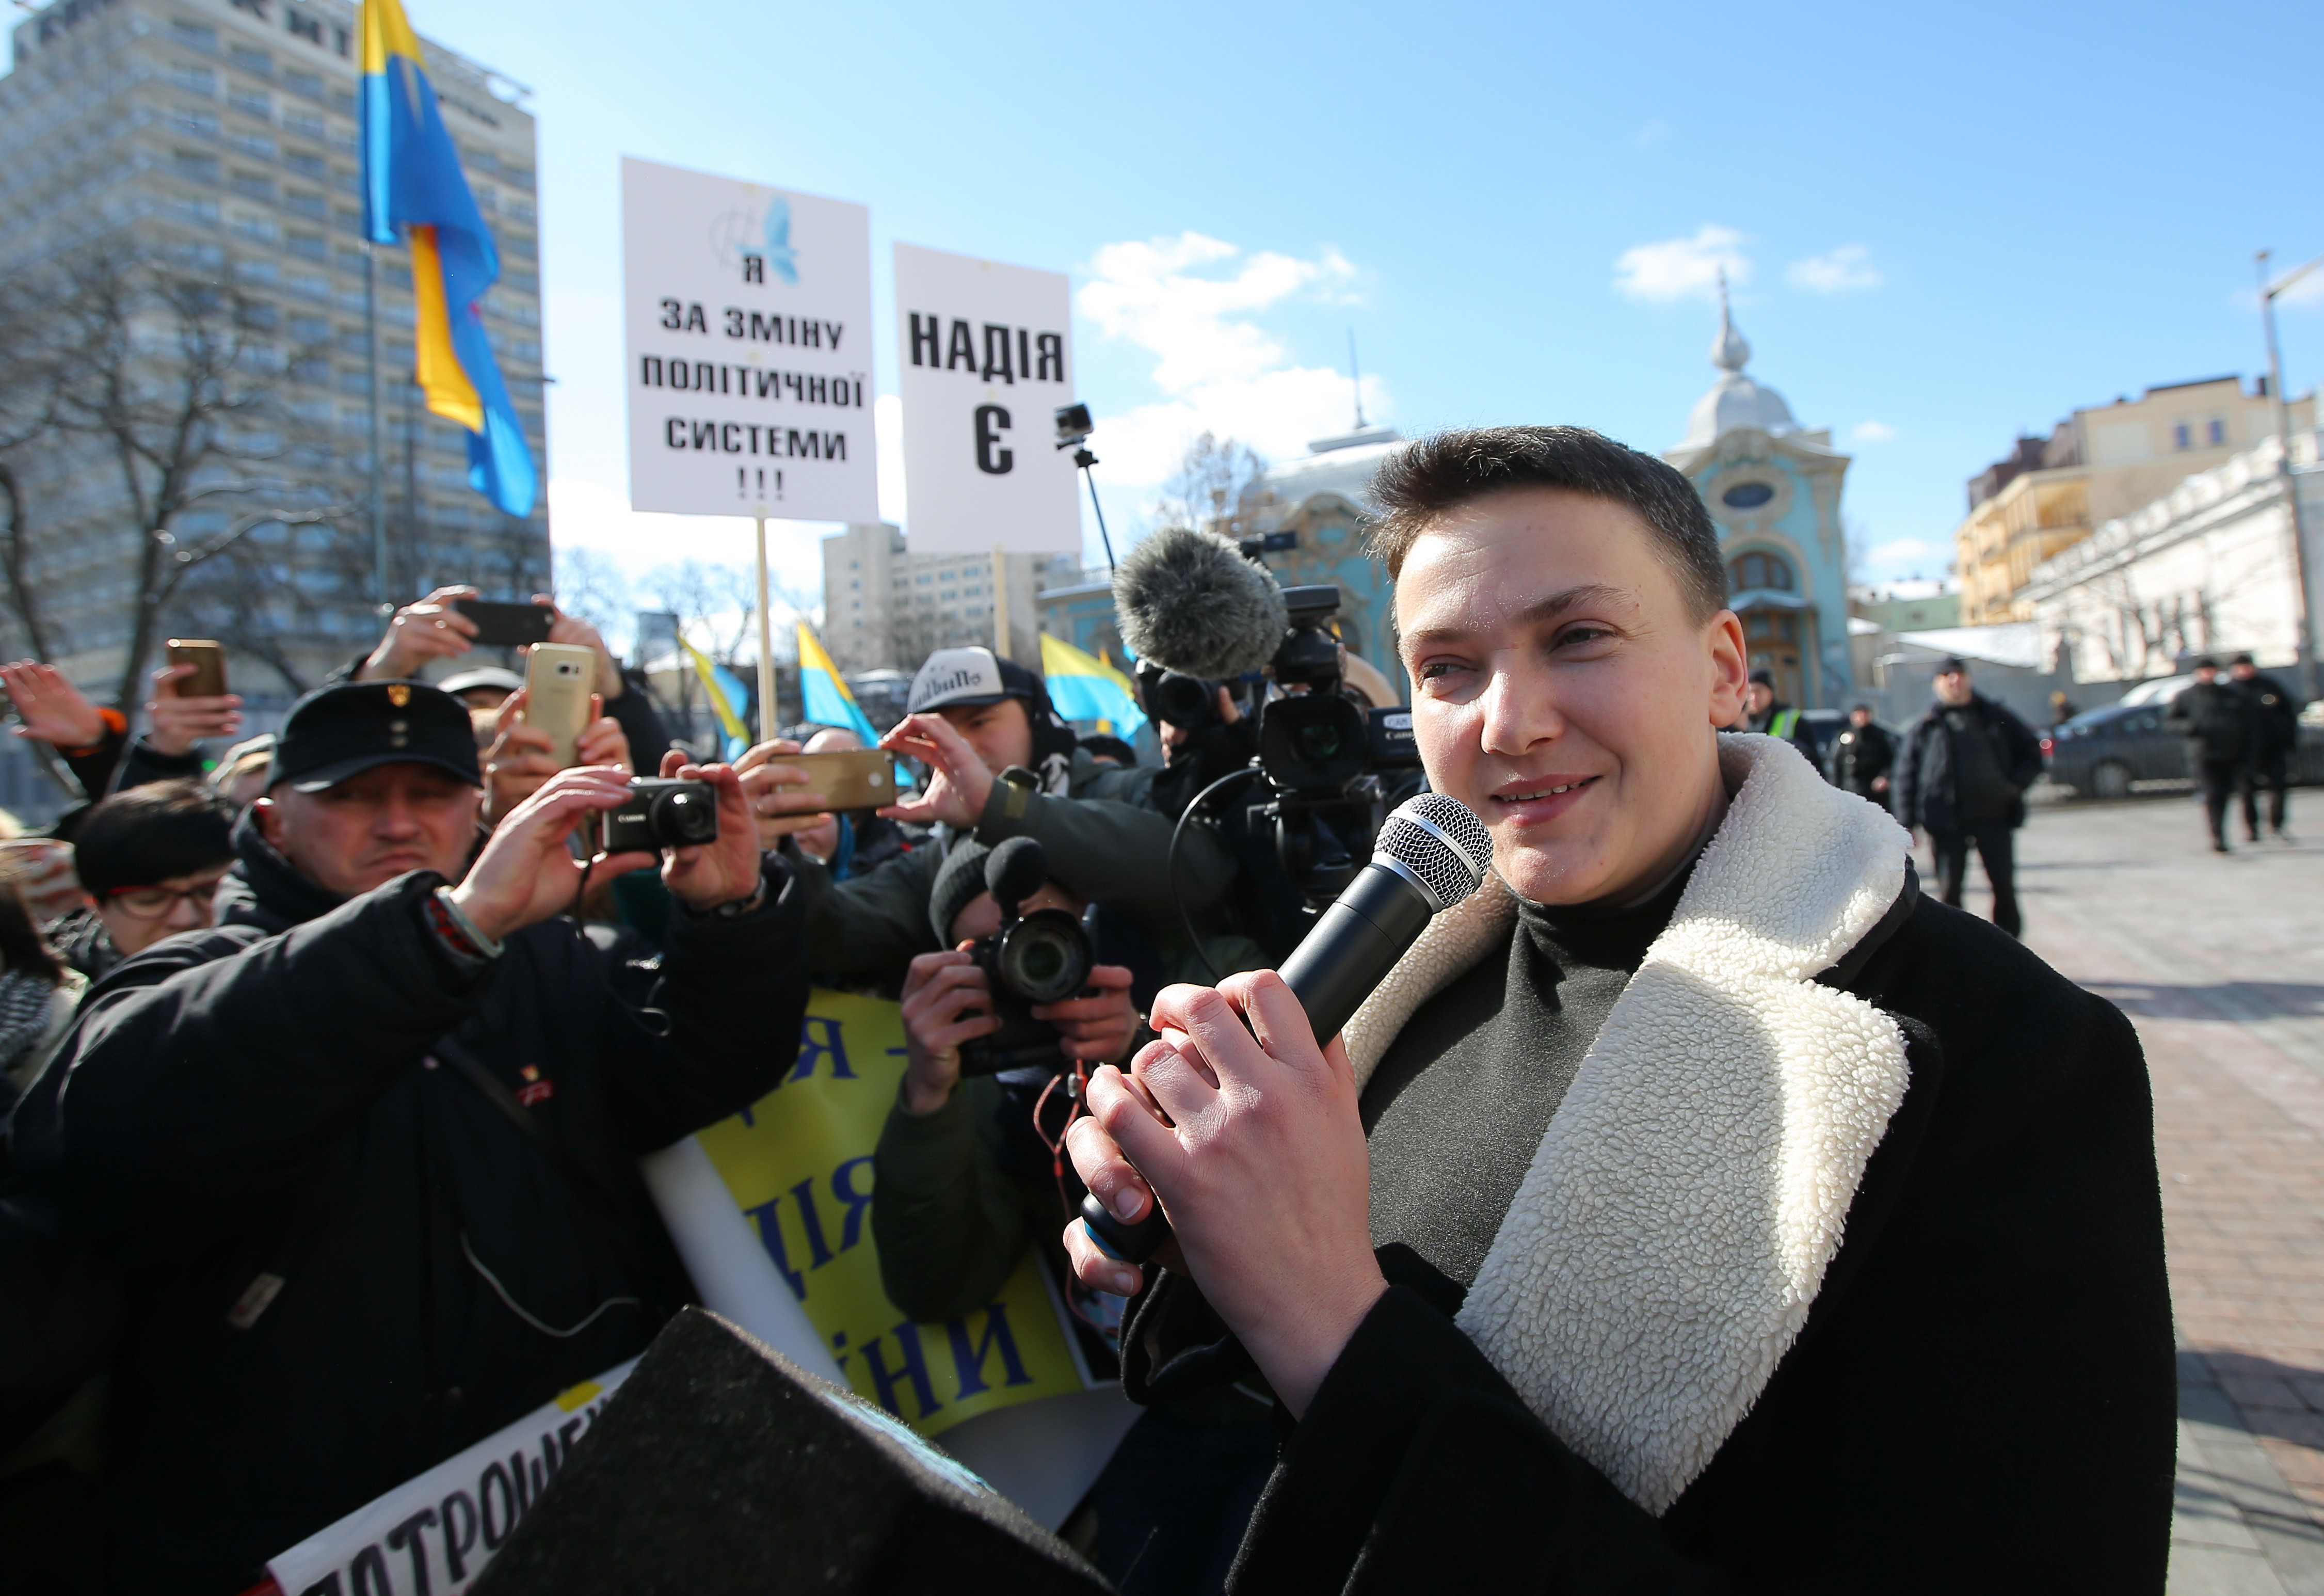 Народный депутат Надежда Савченко на акции своих сторонников.&nbsp;
Фото: &copy; РИА Новости